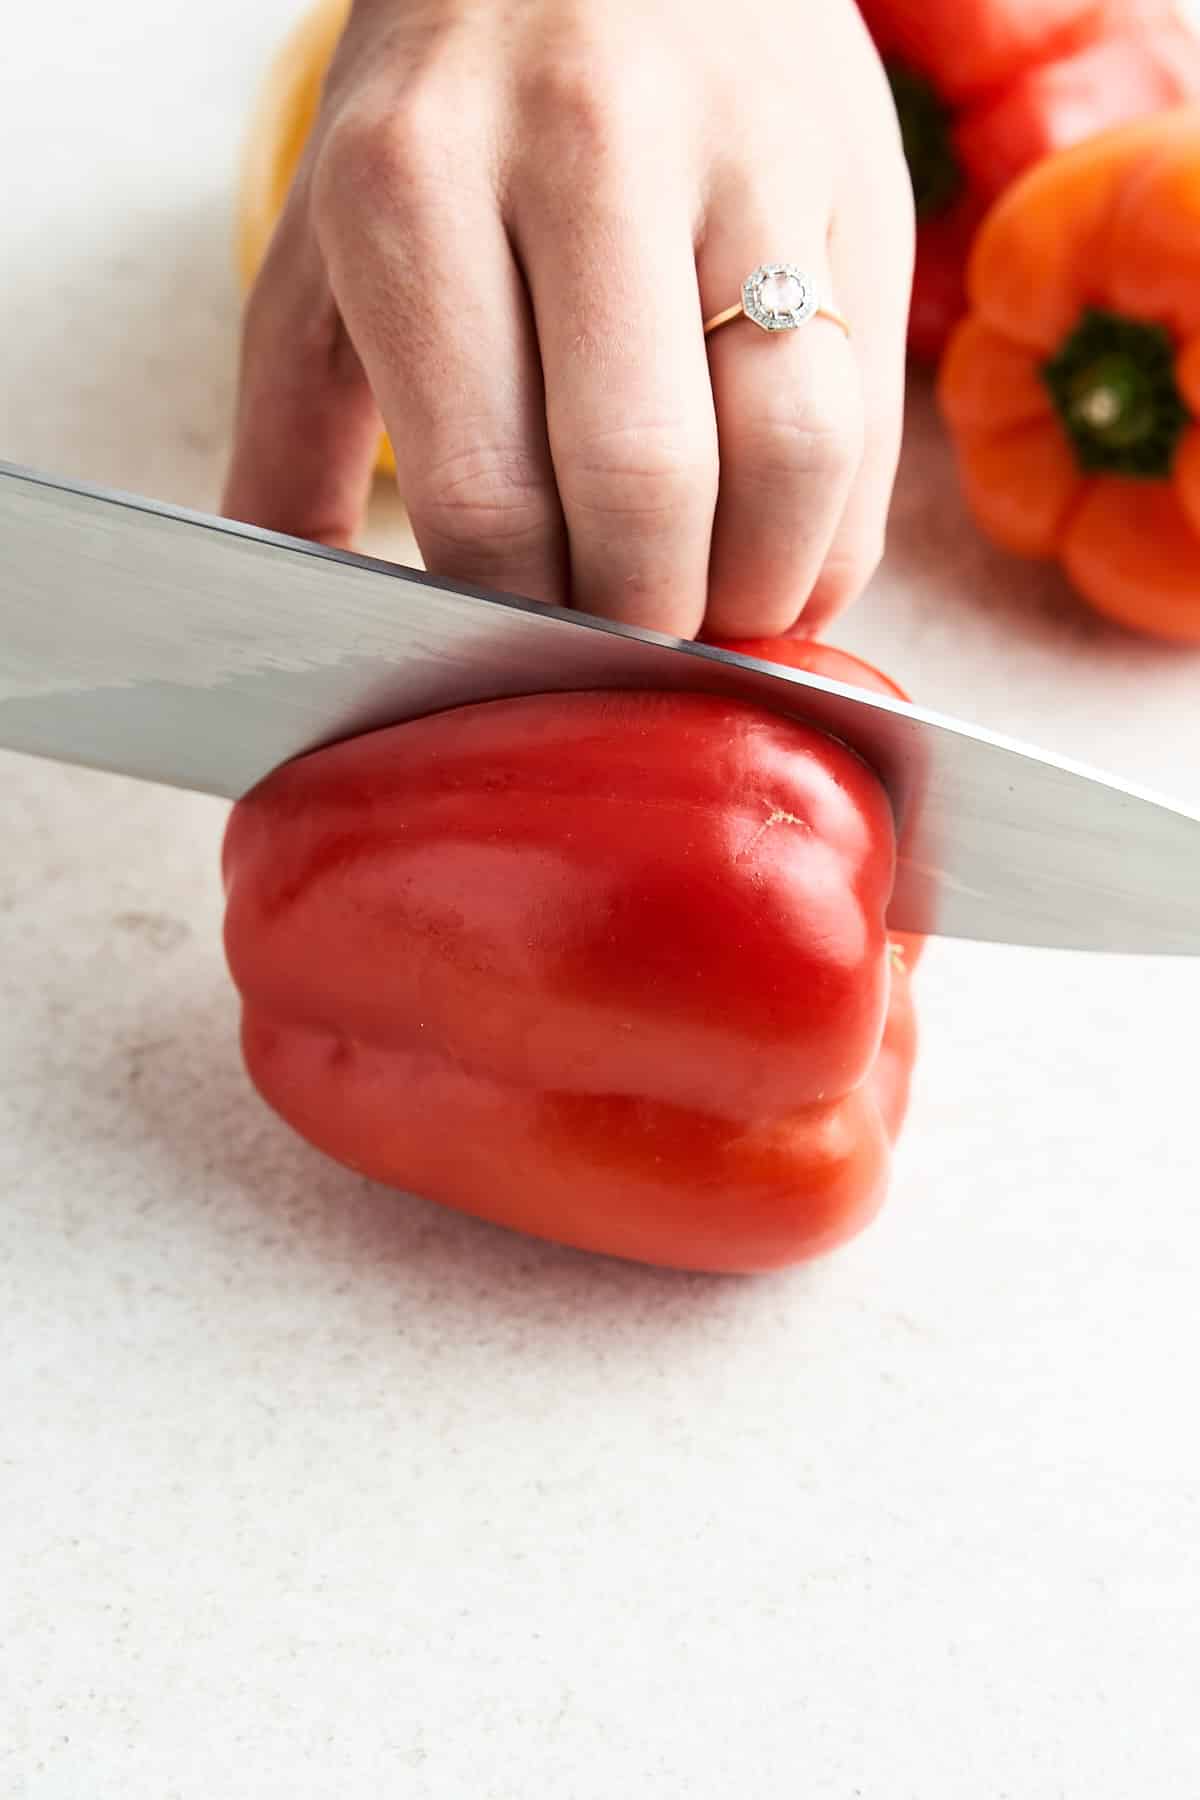 Cutting a bell pepper in half.